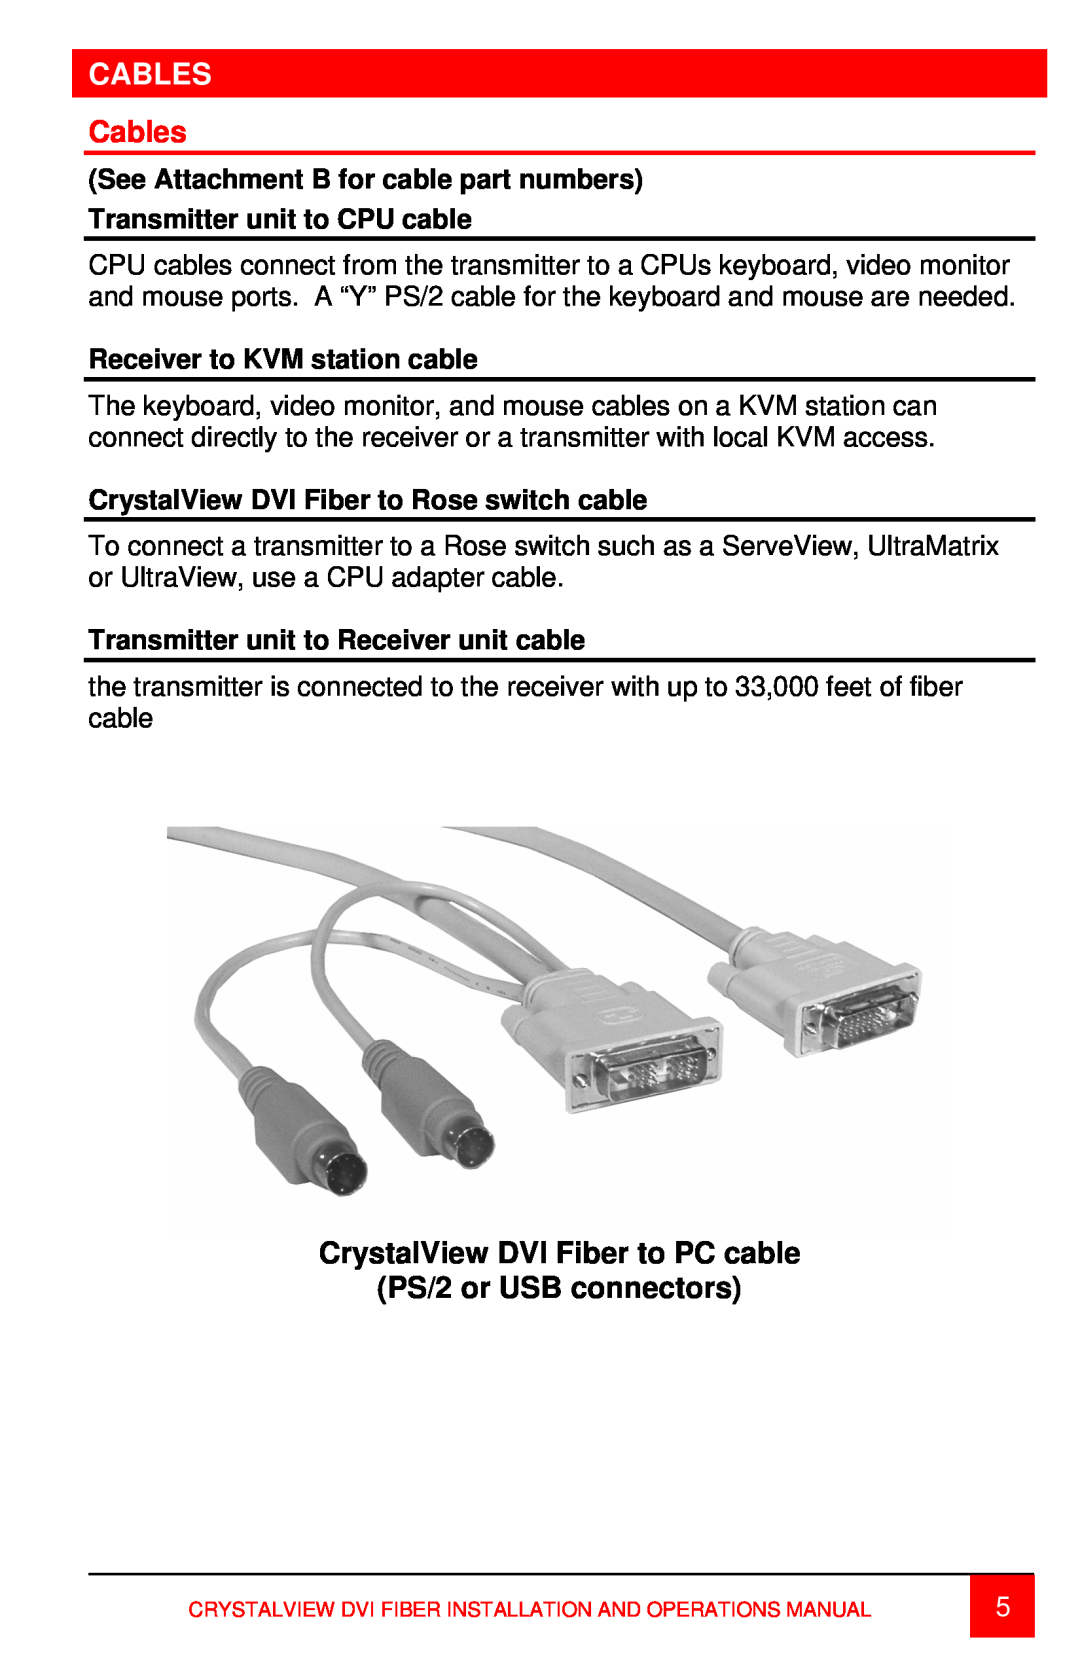 Rose electronic DVI Fiber DIGITAL FIBER KVM EXTENDER, CRK-2DFSPD2D, CRK-2DFSUD2D manual Cables, Receiver to KVM station cable 